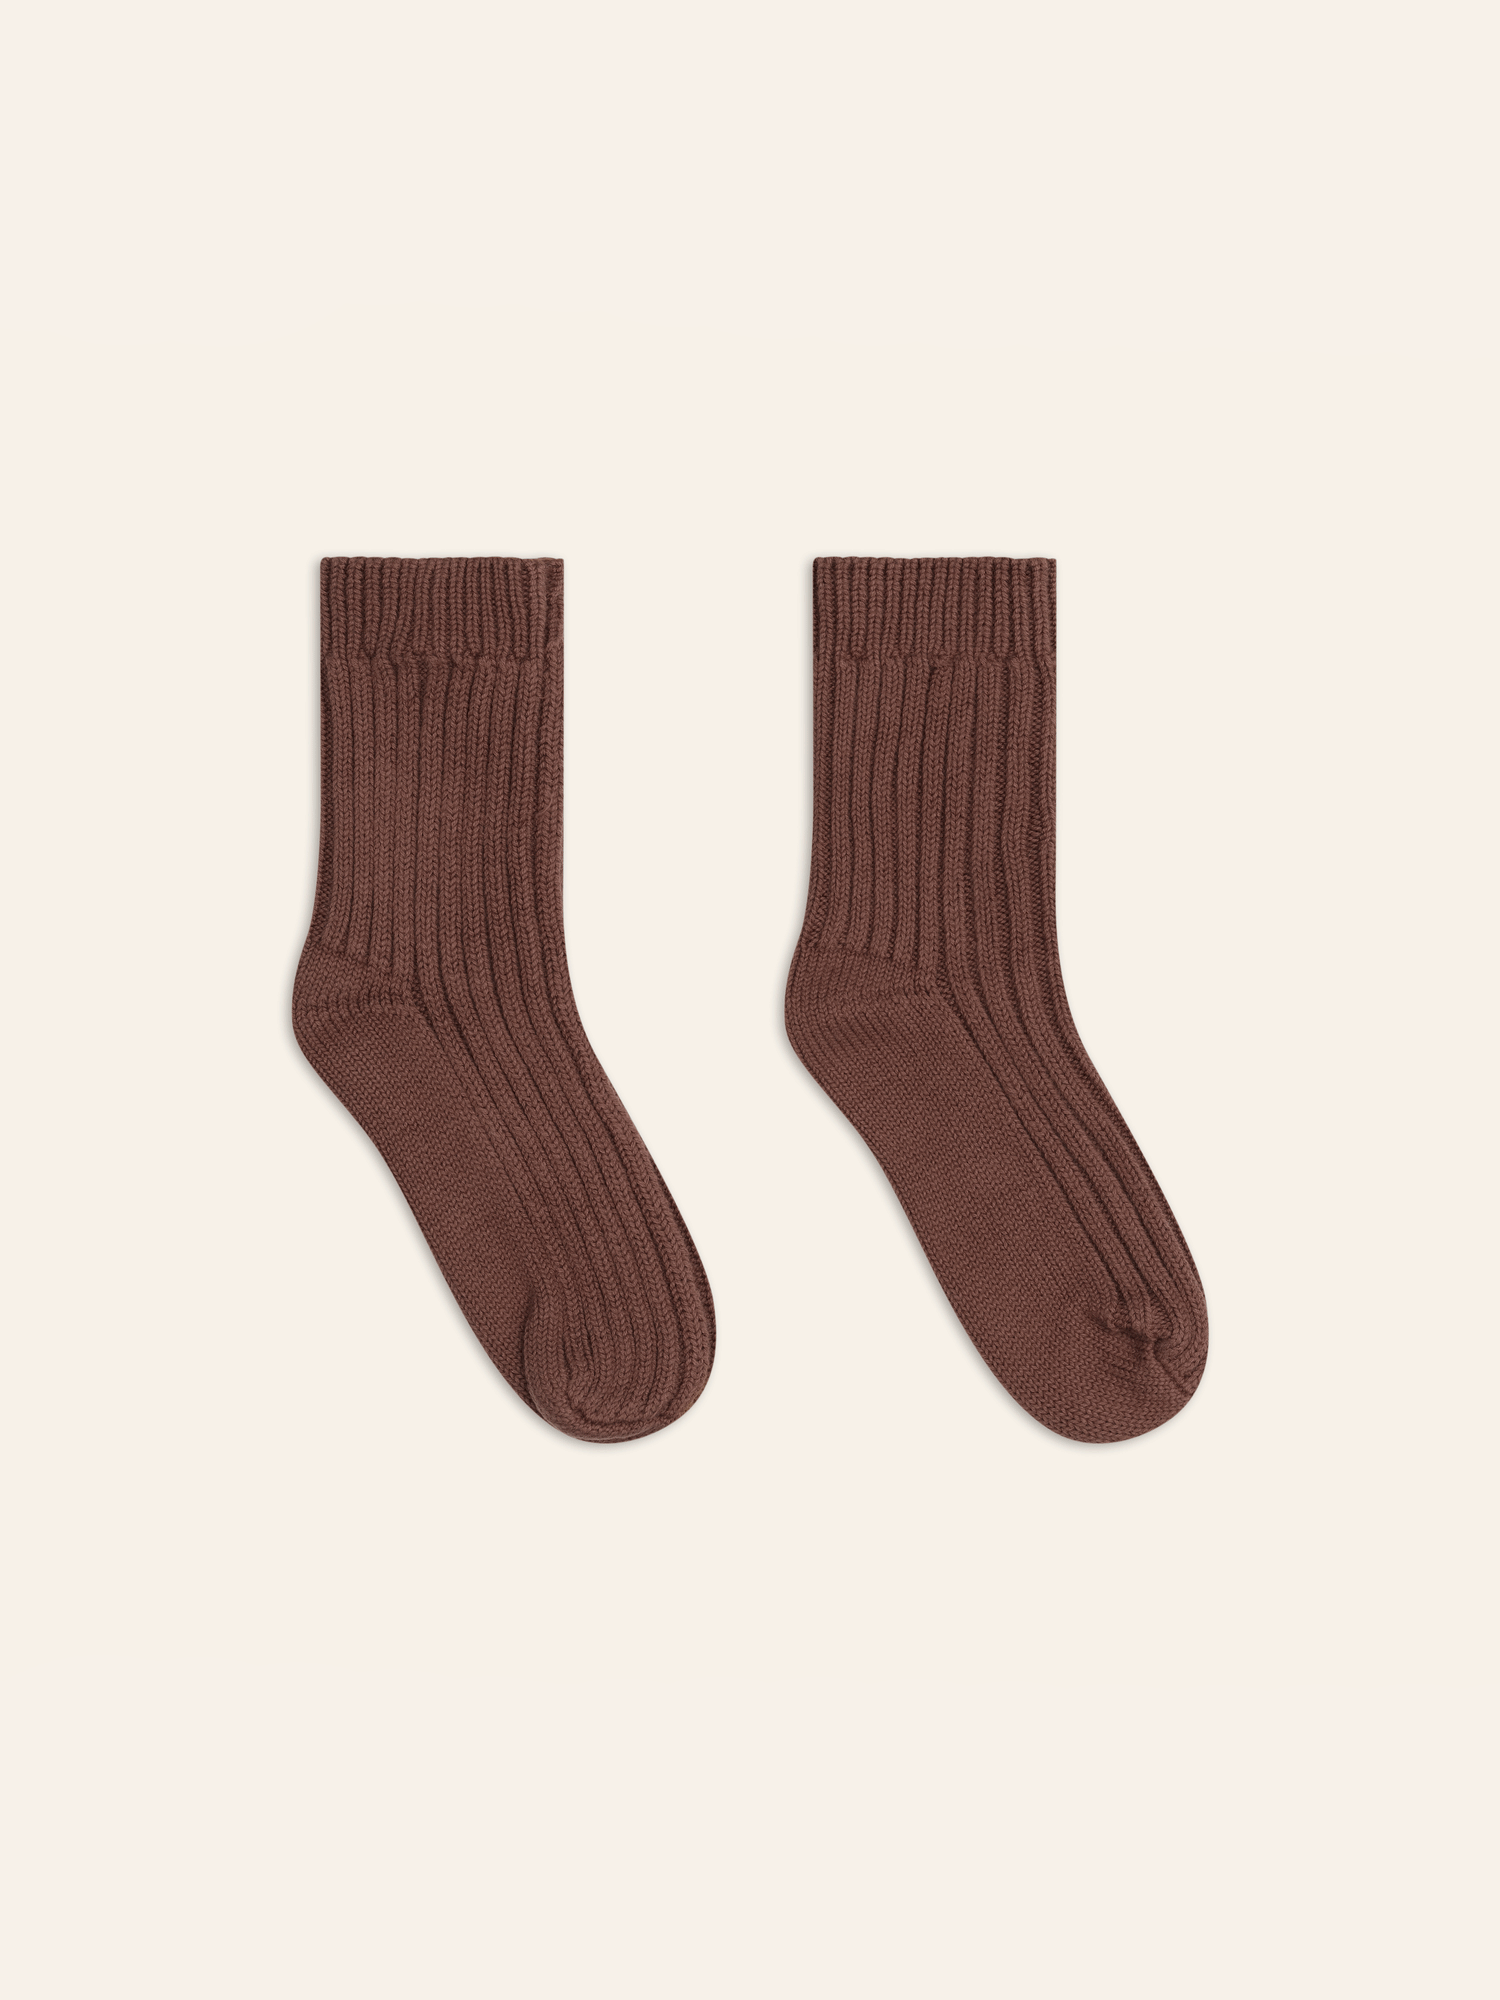 Knit Socks | Cocoa